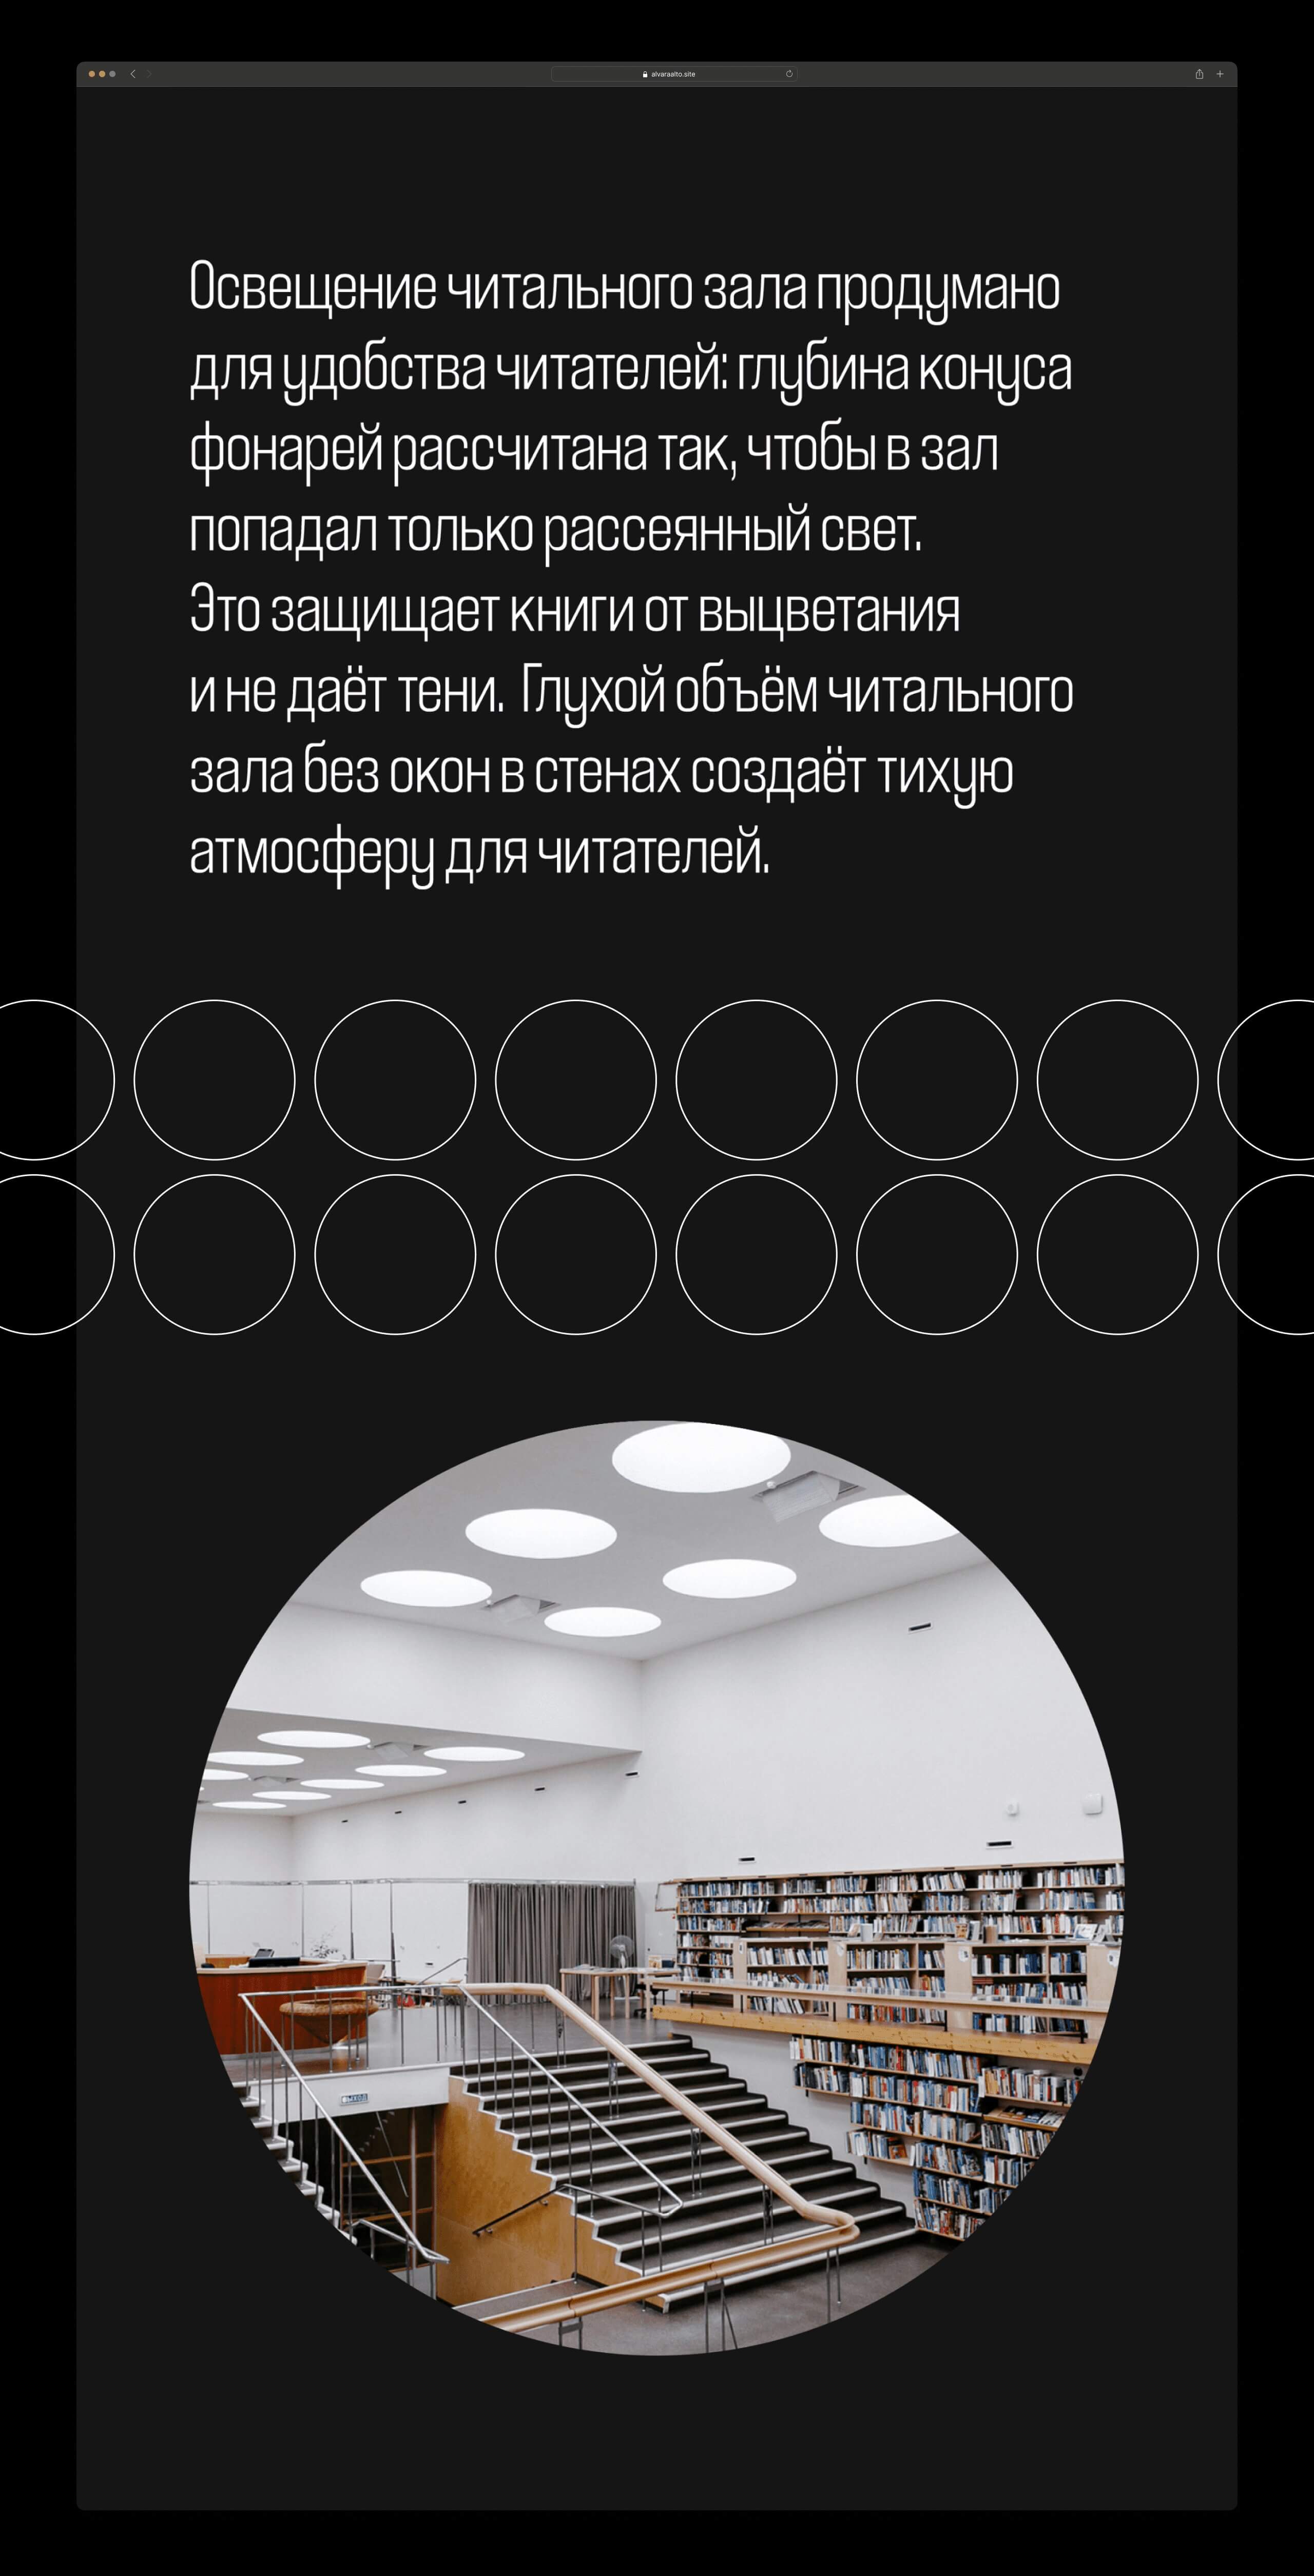 Блок на сайте об освещении в библиотеке